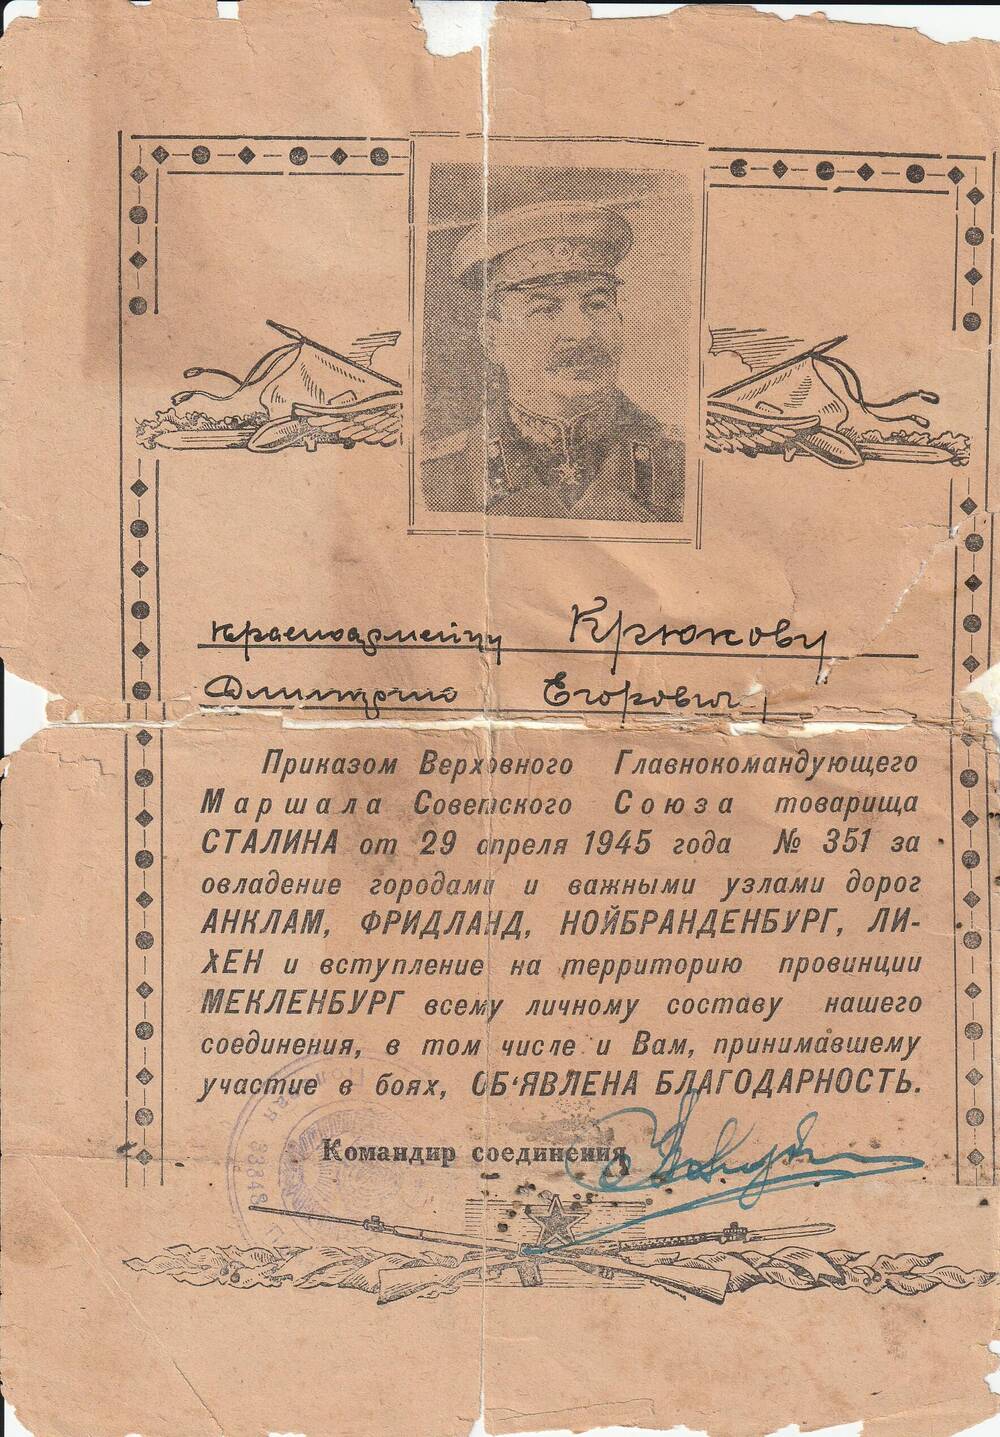 Благодарность № 351 от 29.04.1945 г., объявленная Крюкову Дмитрию Егоровичу приказом Верховного Главнокомандующего тов. Сталина.